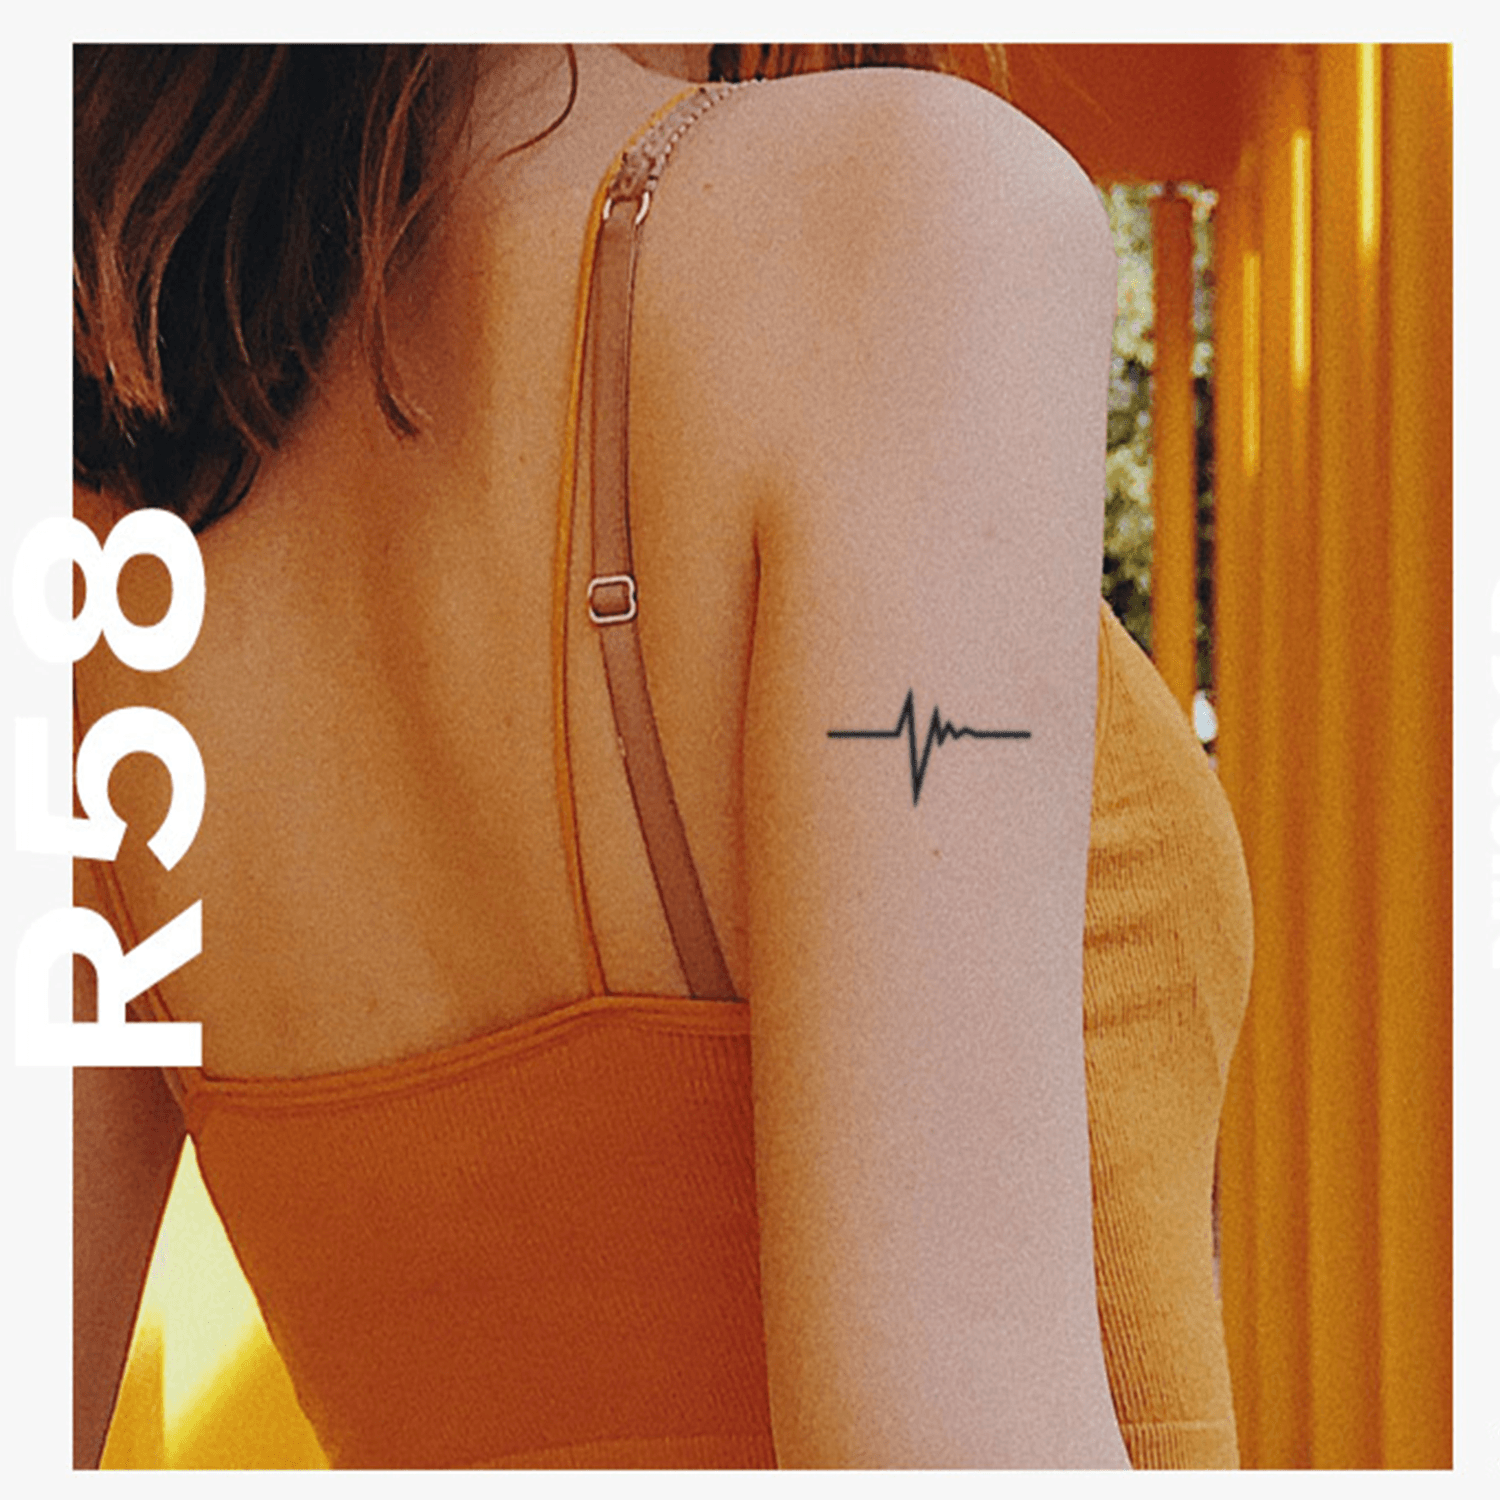 Heartbeat Semi-Permanent Tattoo - StiCool